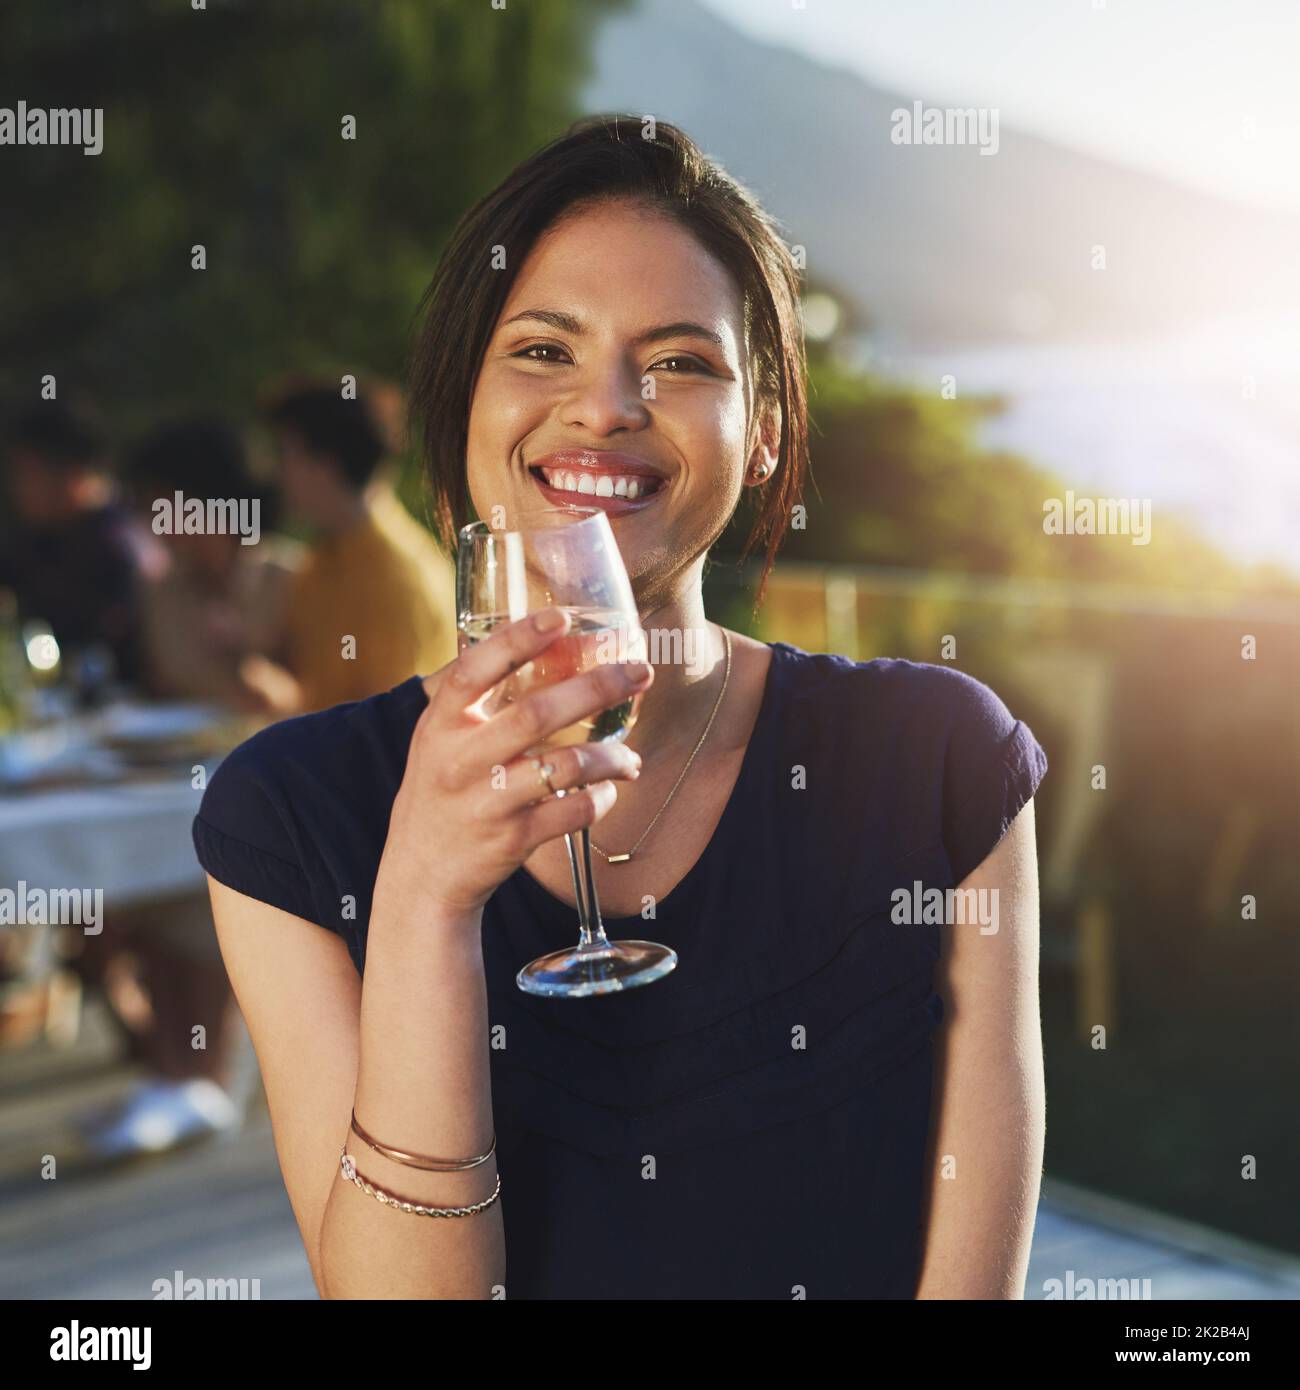 La shes fine come il vino fresco che beve. Scatto di una giovane donna attraente godendo un bicchiere di vino all'aperto con i suoi amici in background. Foto Stock